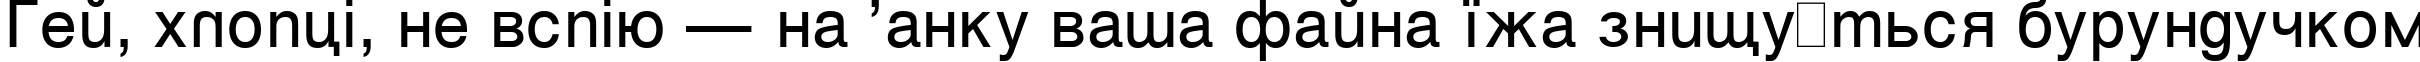 Пример написания шрифтом Vanta Medium Plain:001.001 текста на украинском